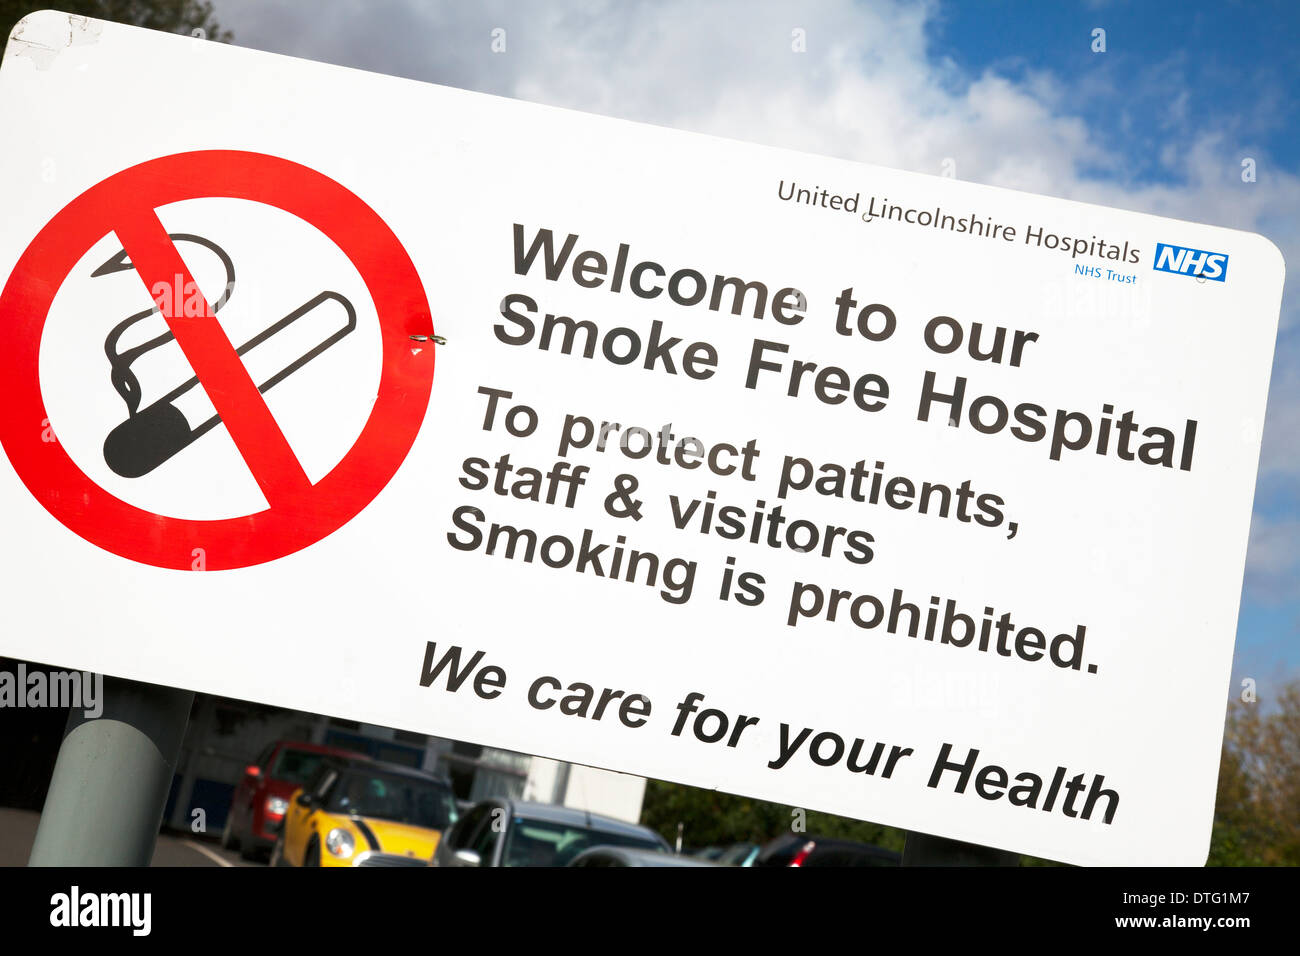 Vereinigte Lincolnshire Krankenhäuser Willkommensschild NHS Louth Stadt Rauch frei Rauchen verboten Stockfoto